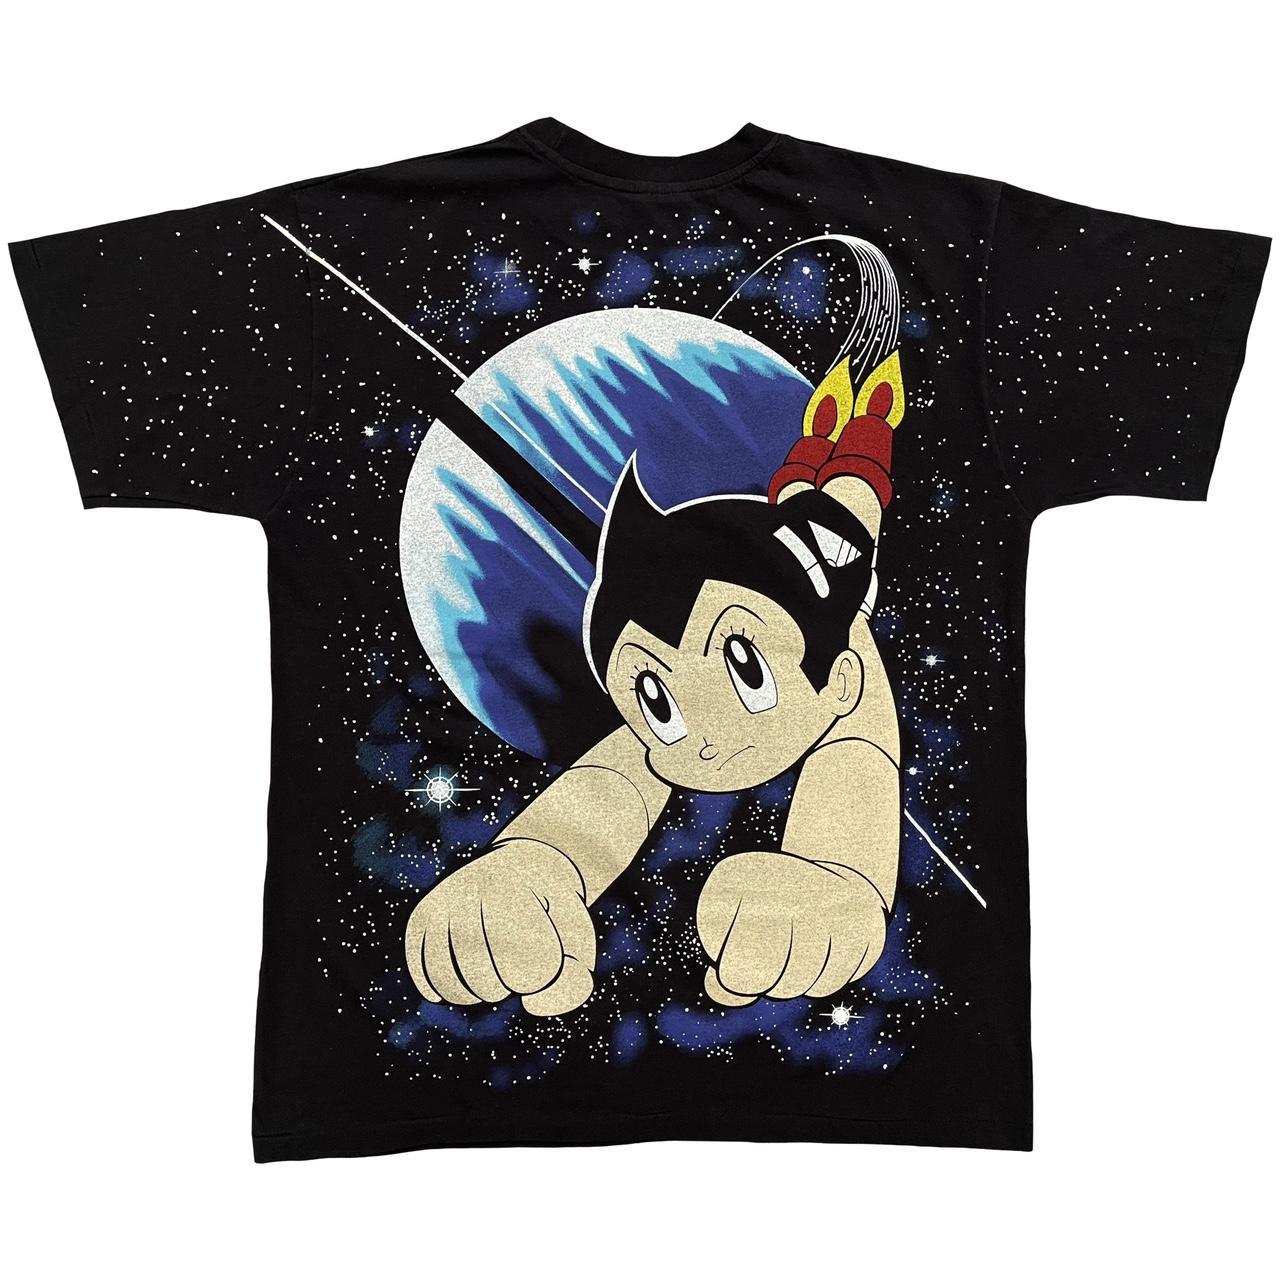 Astro Boy T-Shirt - XL